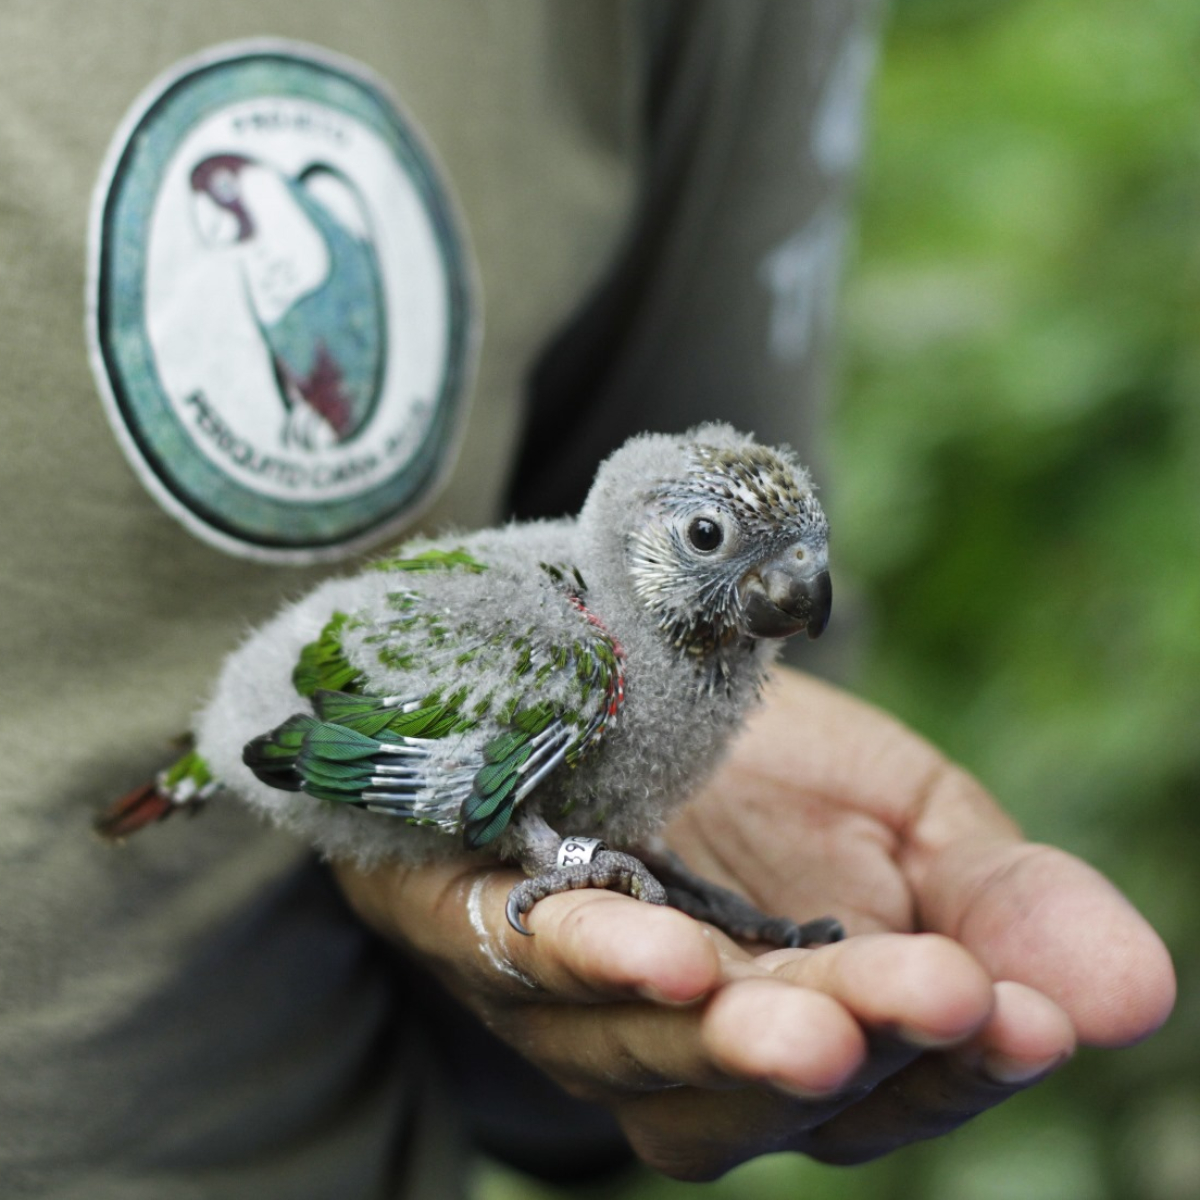  Parque das Aves periquito cara suja 